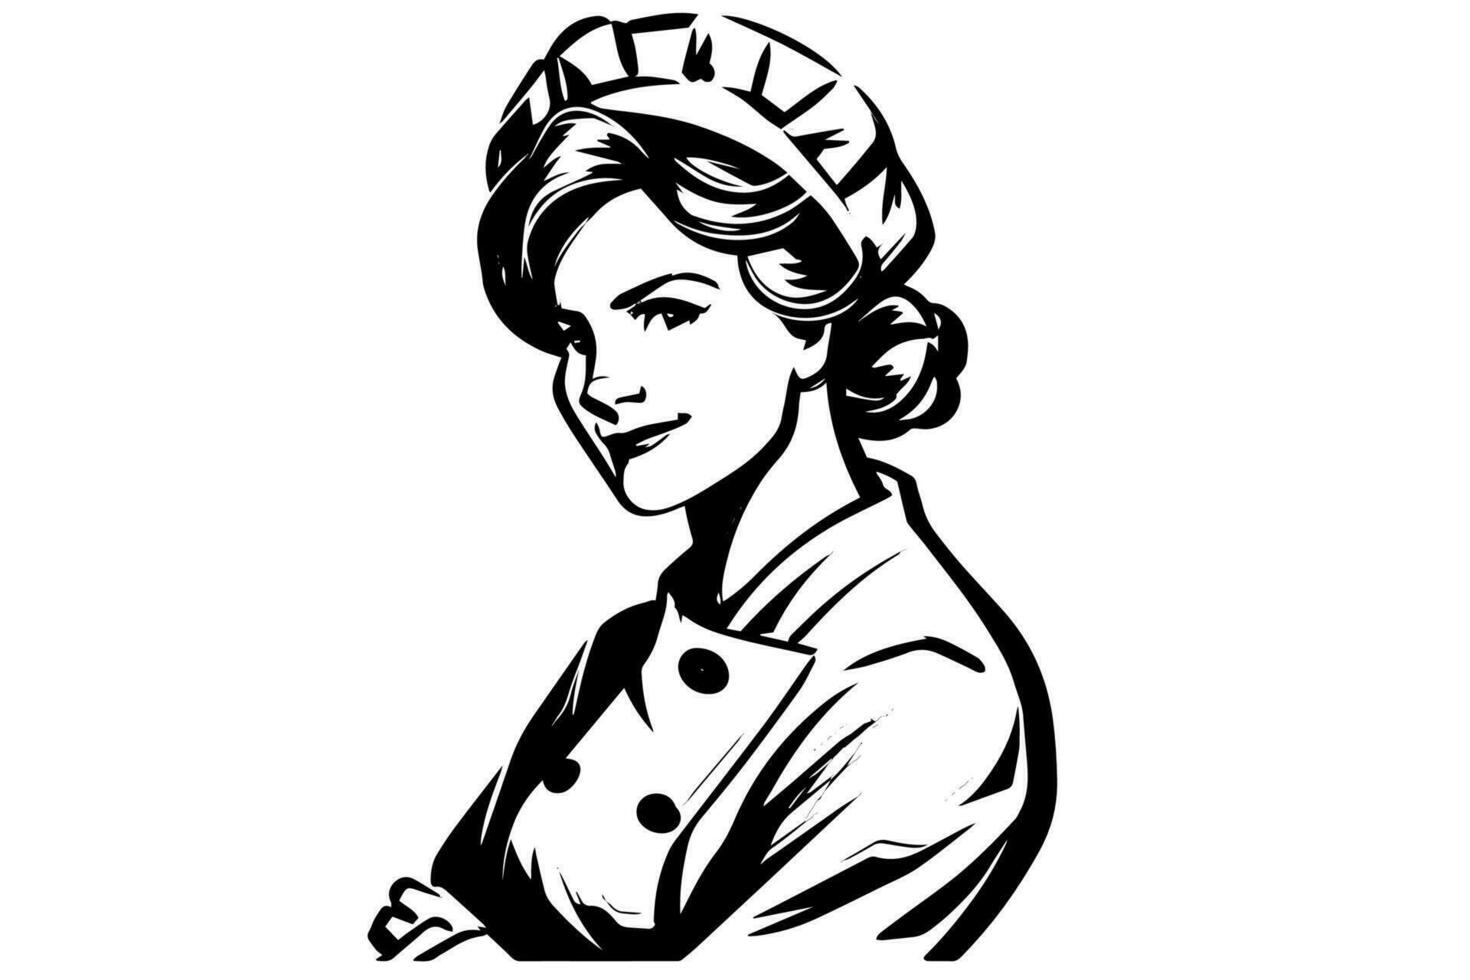 Hand gezeichnet Tinte skizzieren von weiblich Bäcker oder kochen. Design zum Logo, Symbol, Werbung. graviert Stil Vektor Illustration.